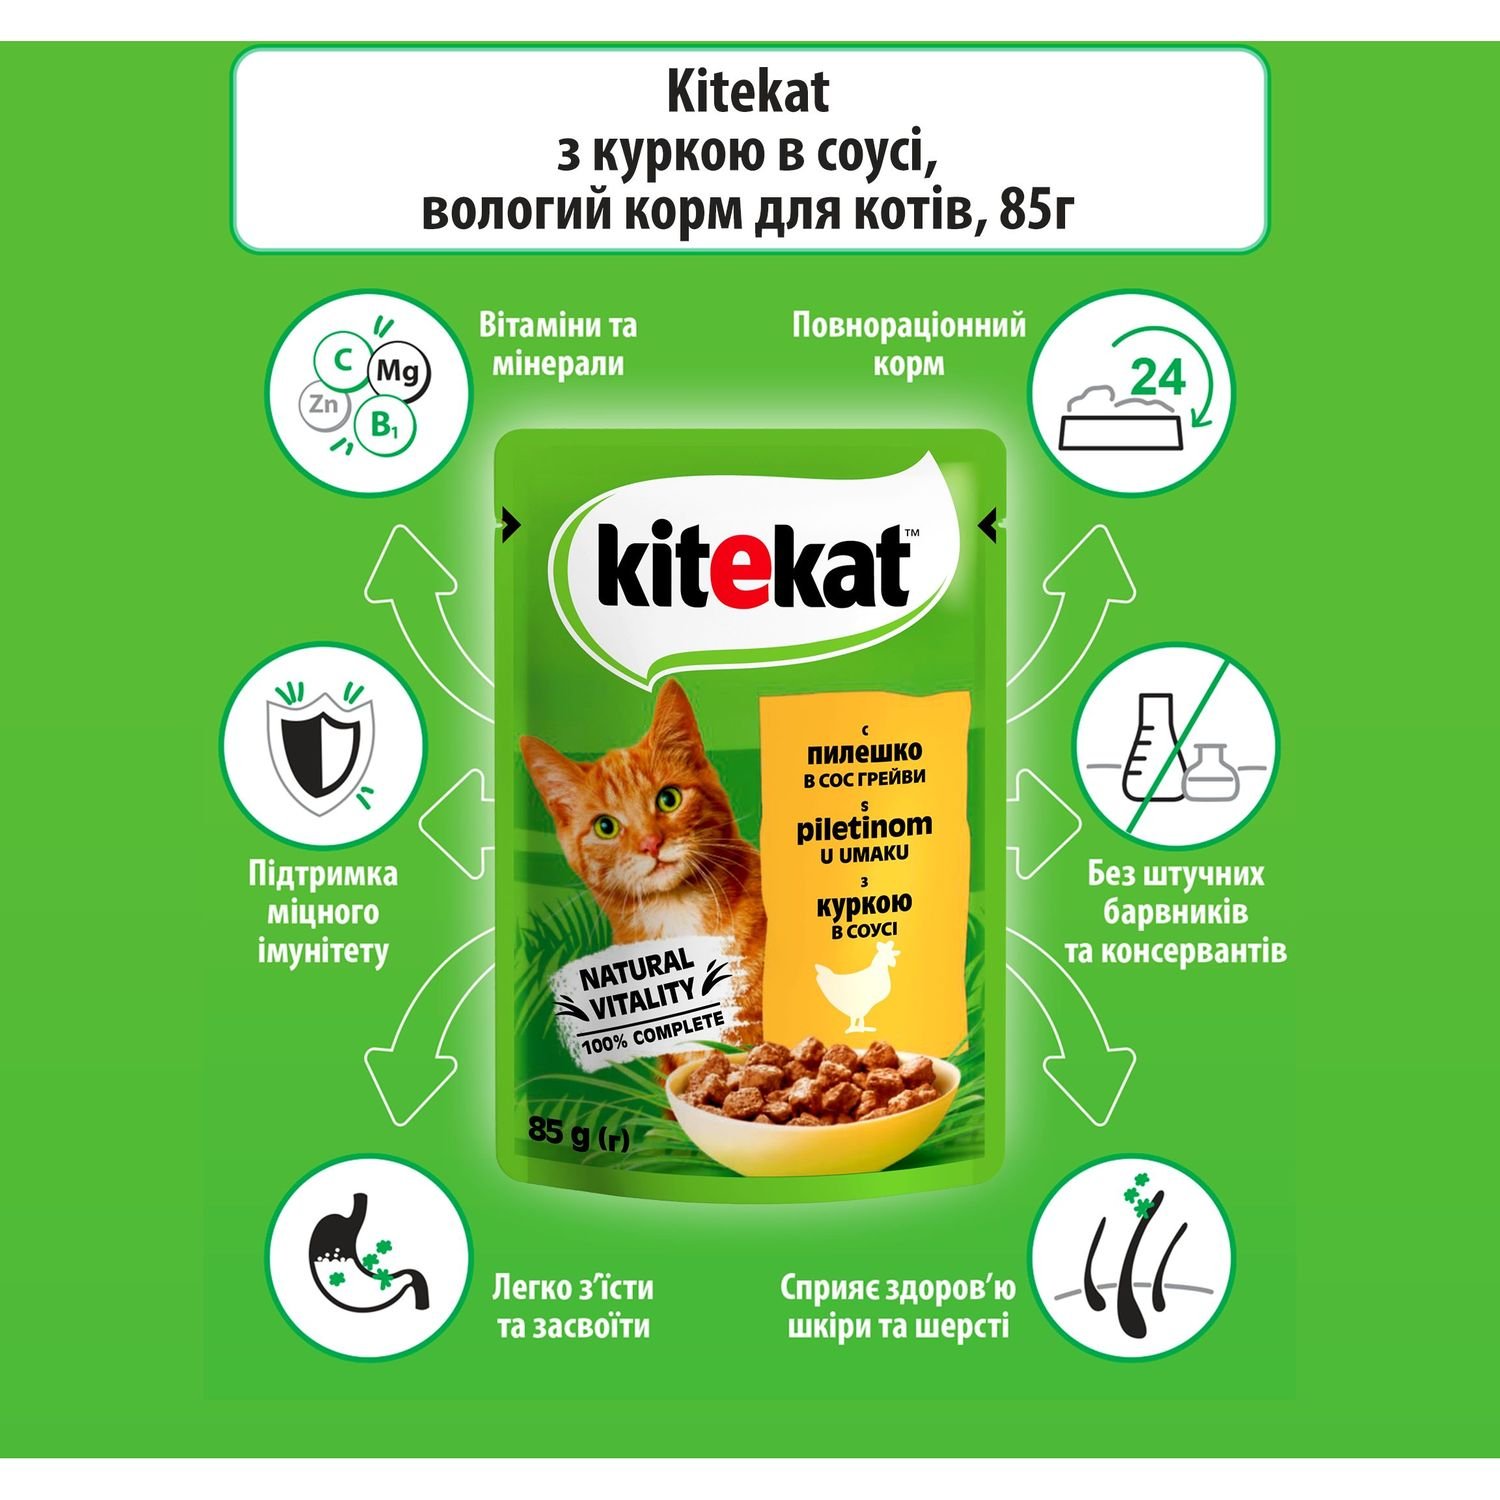 Вологий корм для котів Kitekat, з куркою в соусі, 85 г - фото 4